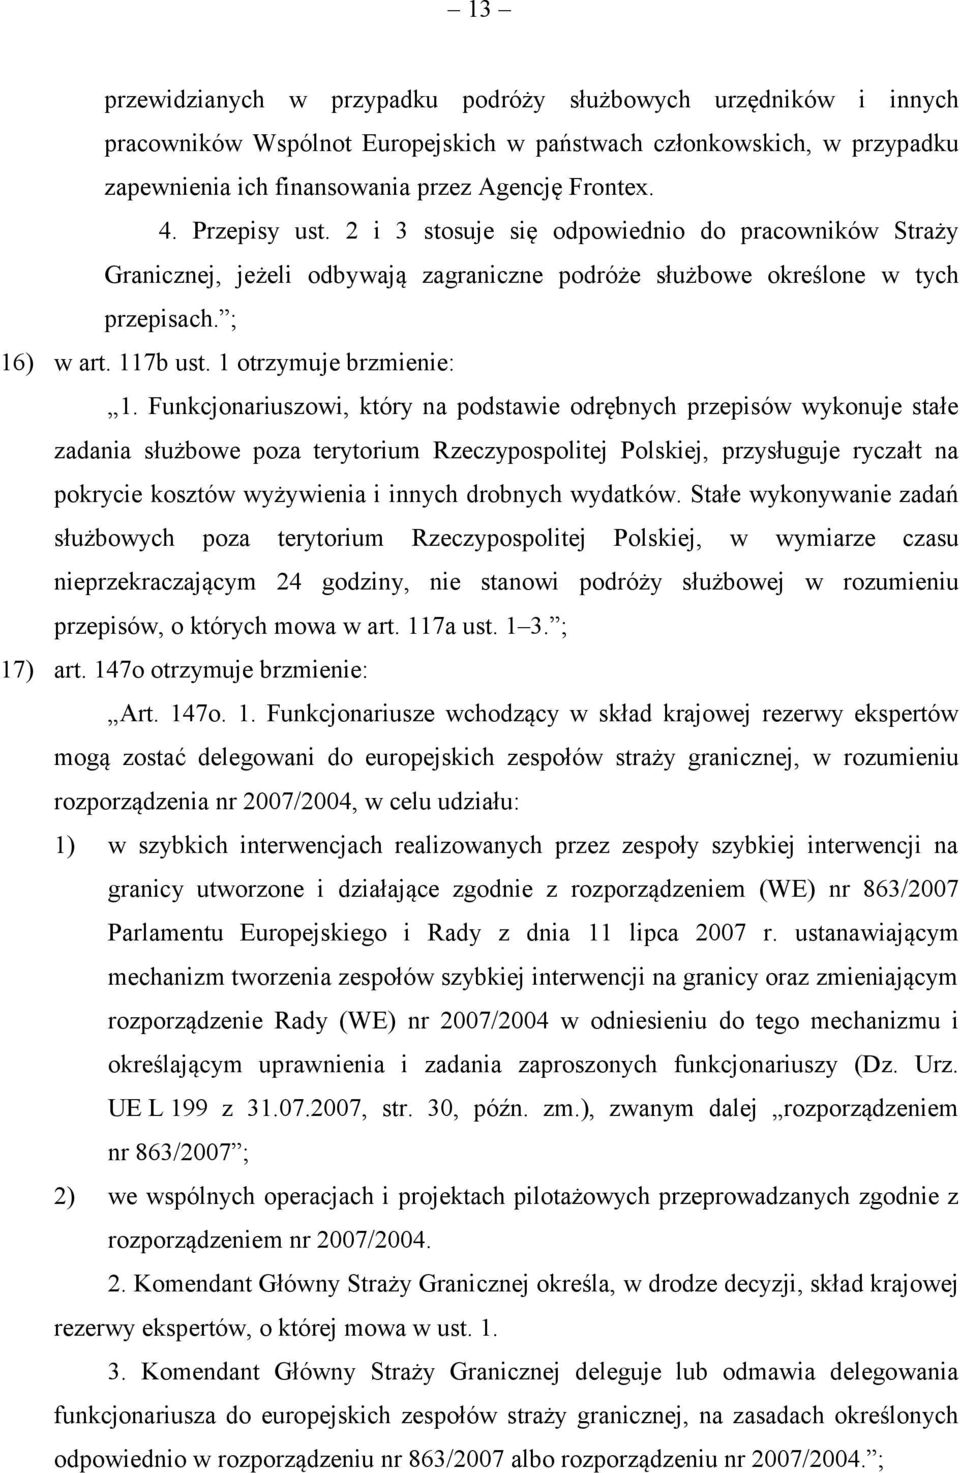 Funkcjonariuszowi, który na podstawie odrębnych przepisów wykonuje stałe zadania służbowe poza terytorium Rzeczypospolitej Polskiej, przysługuje ryczałt na pokrycie kosztów wyżywienia i innych